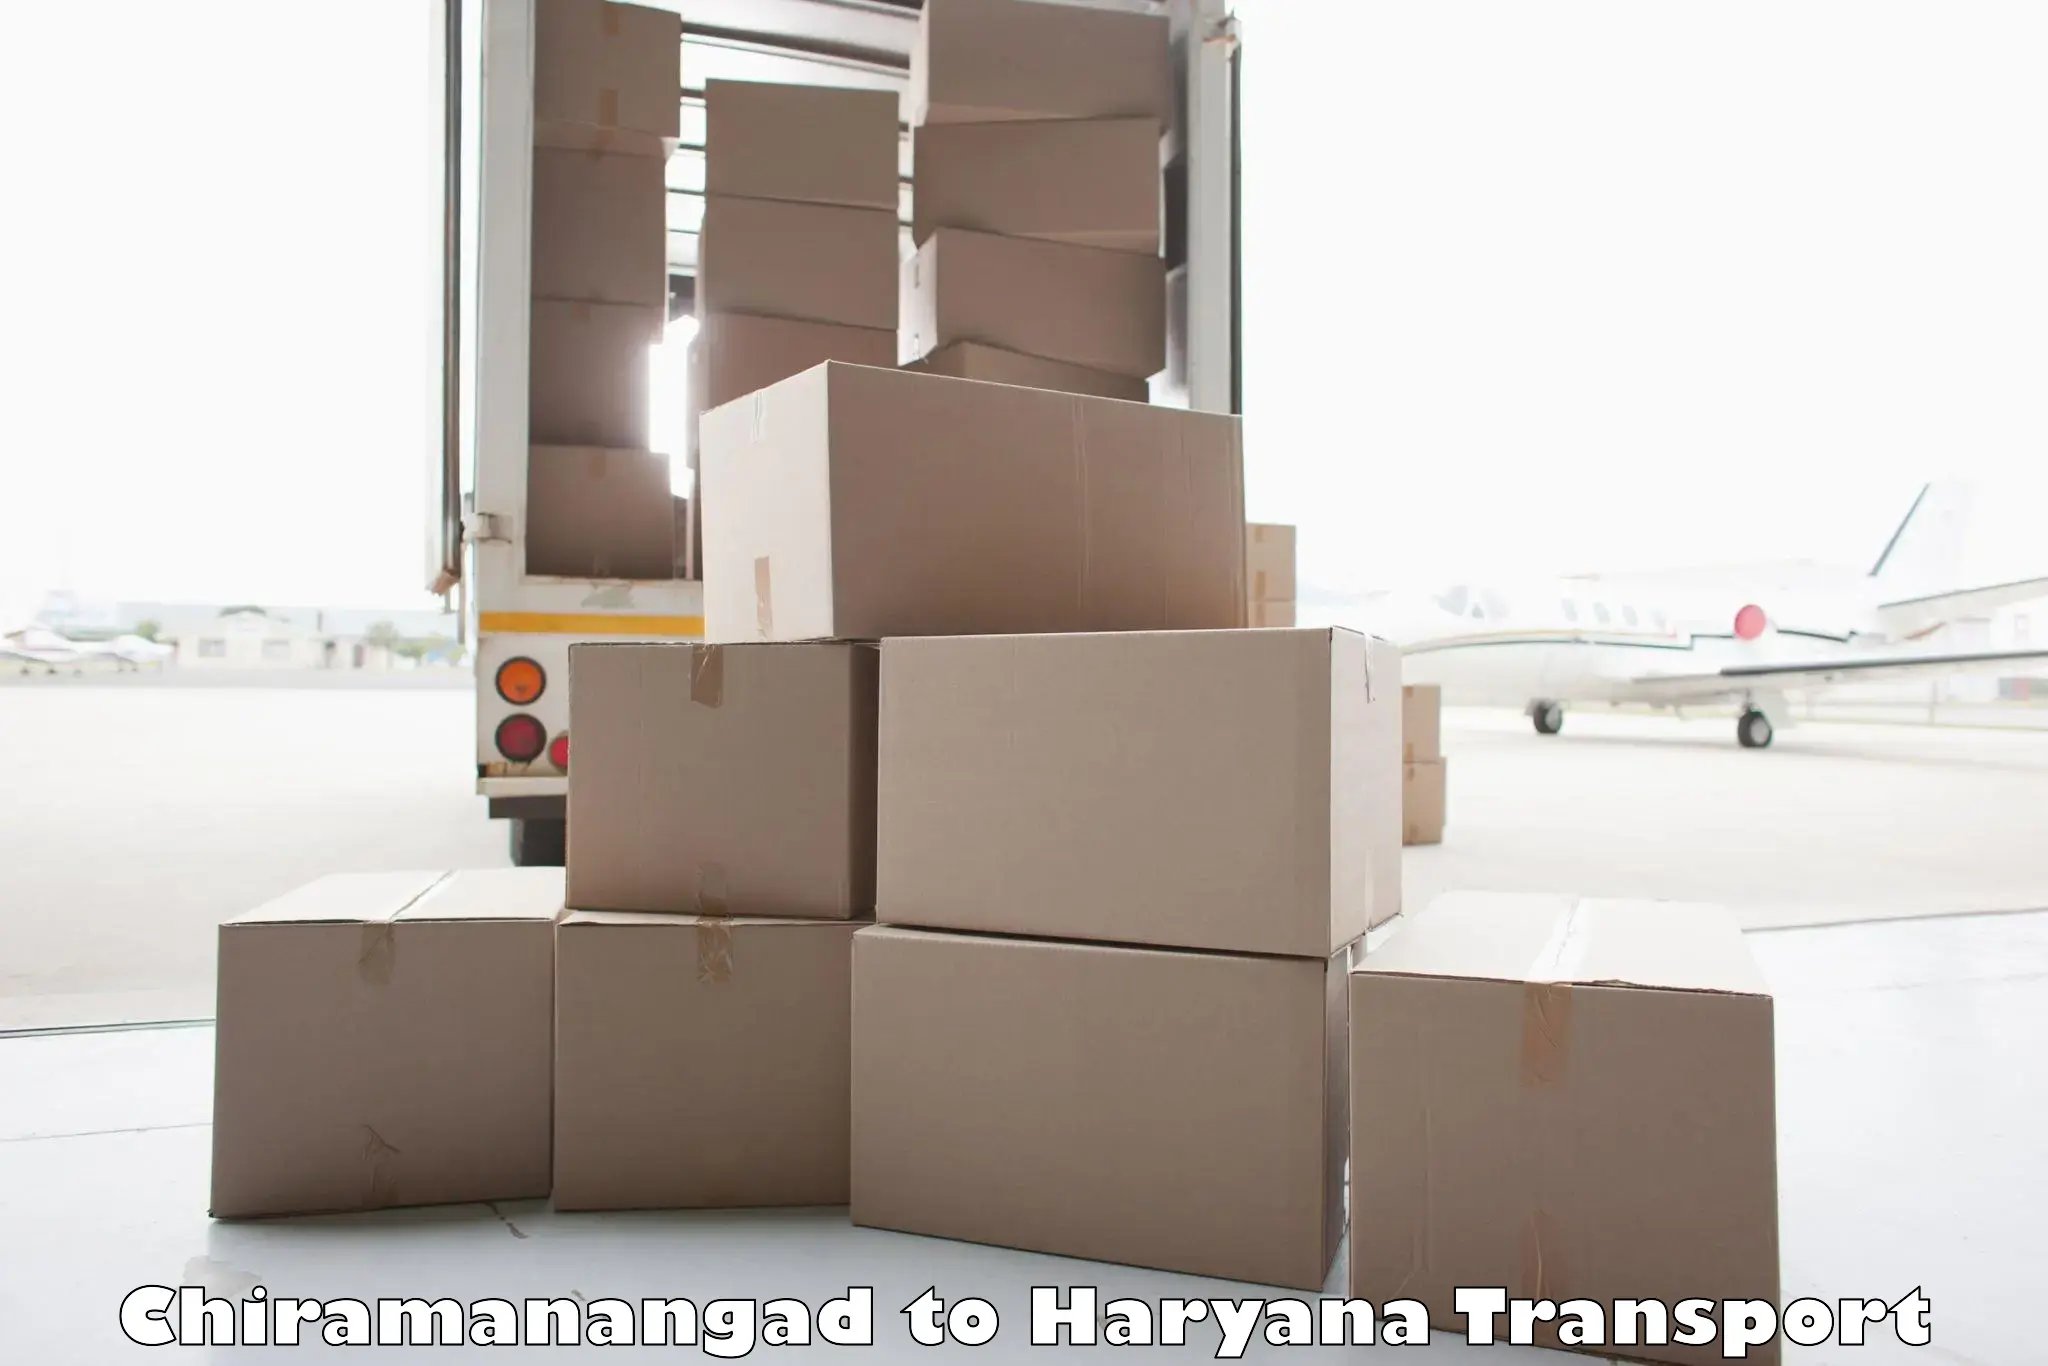 Daily parcel service transport Chiramanangad to Shahabad Markanda